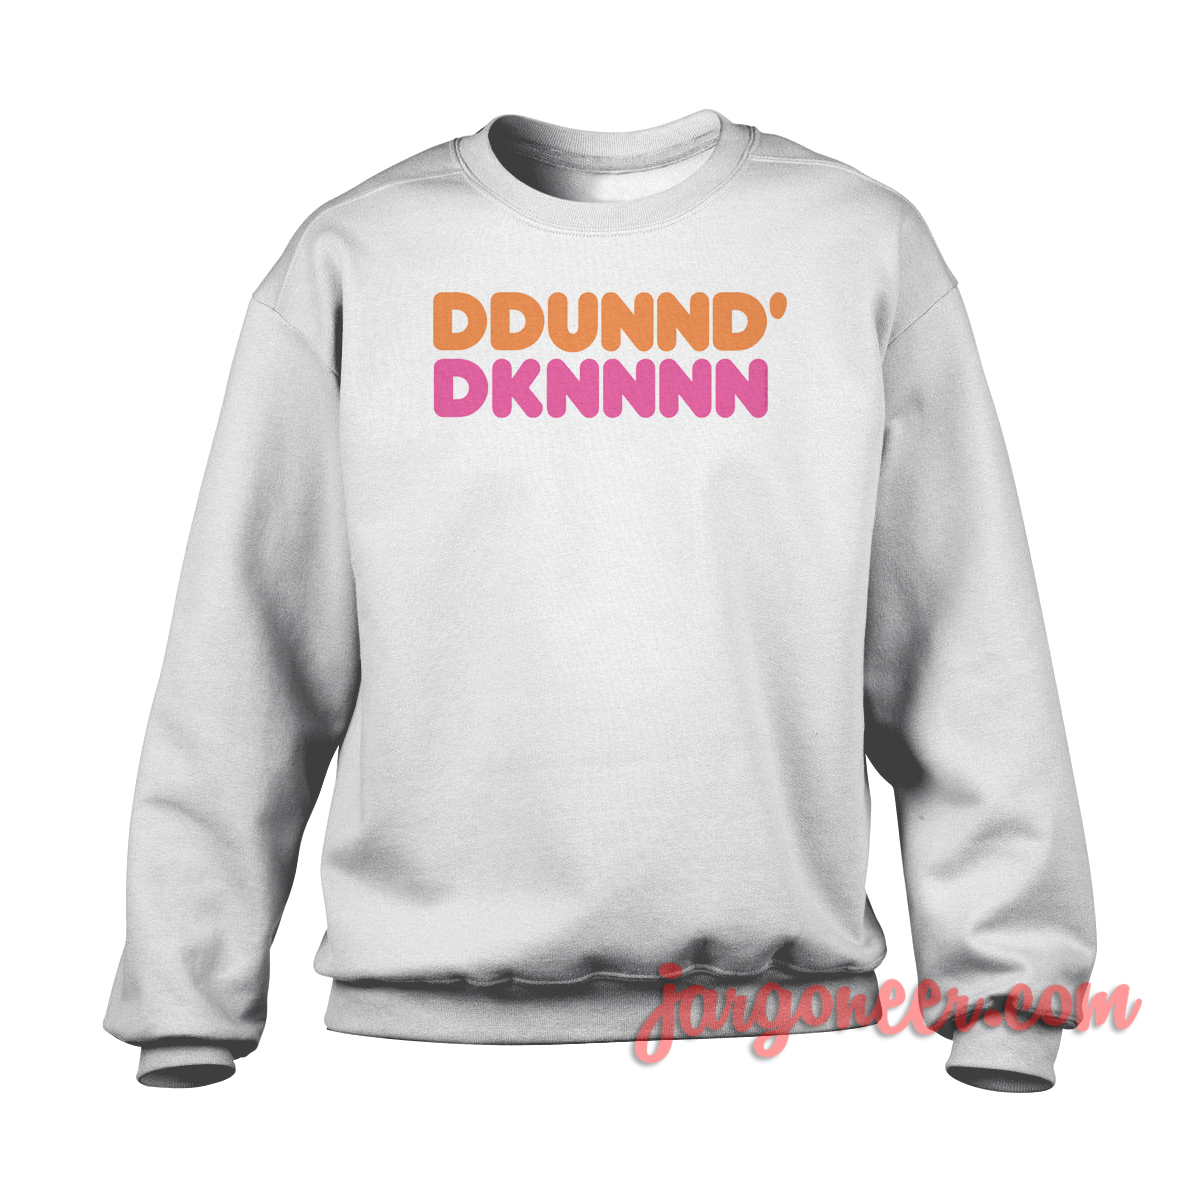 Dund Kind Parody - Shop Unique Graphic Cool Shirt Designs